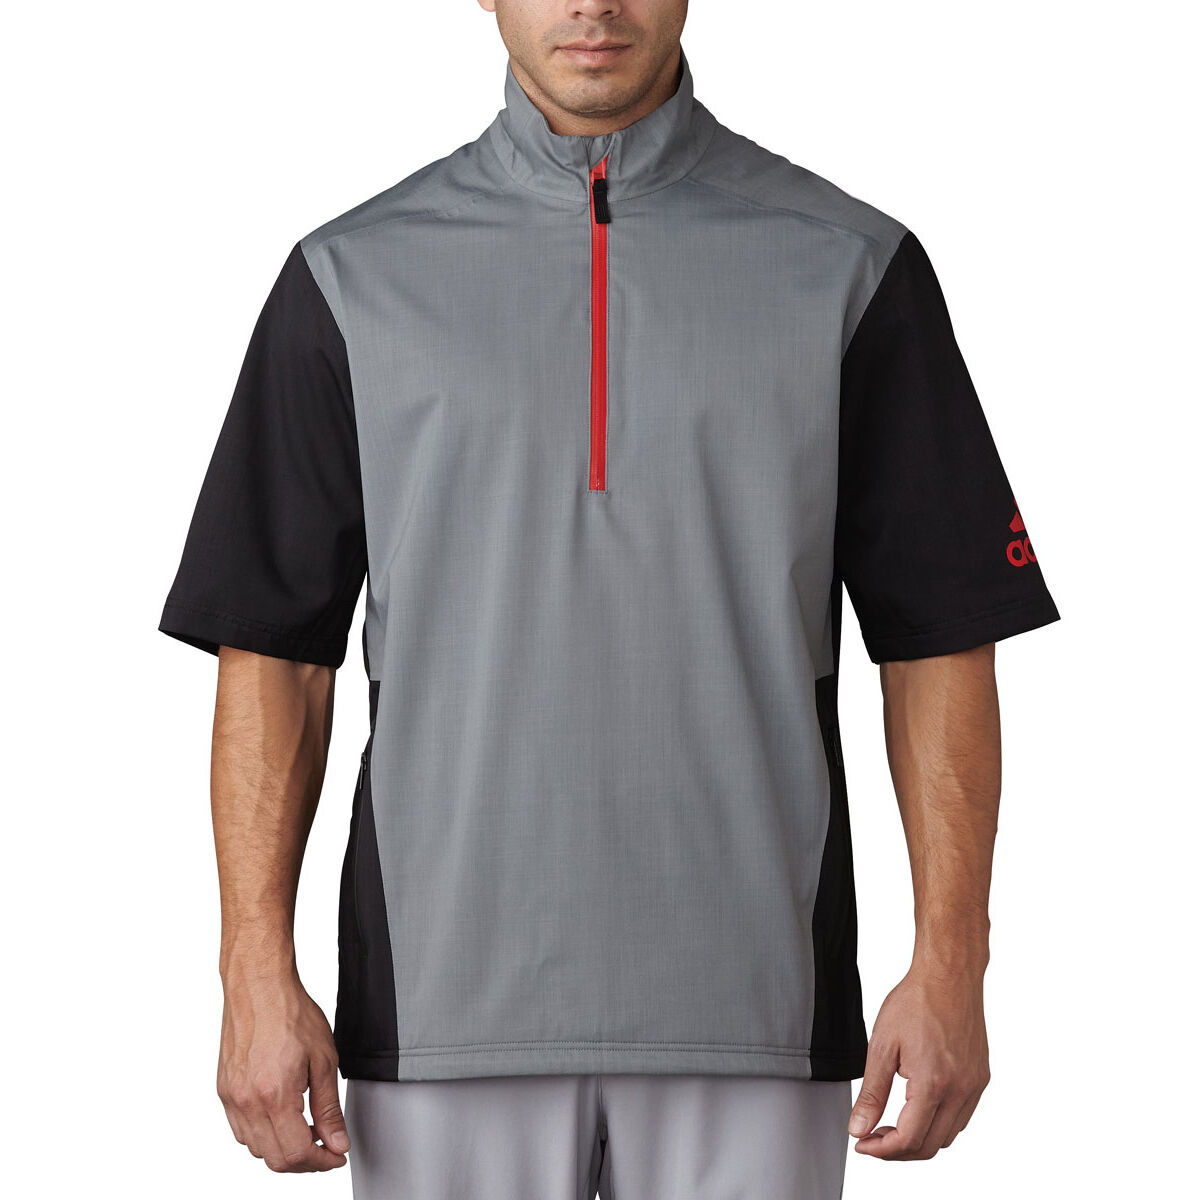 Veste de pluie chinée adidas Climaproof à manches courtes, homme, Petit, Vista grey | Online Golf